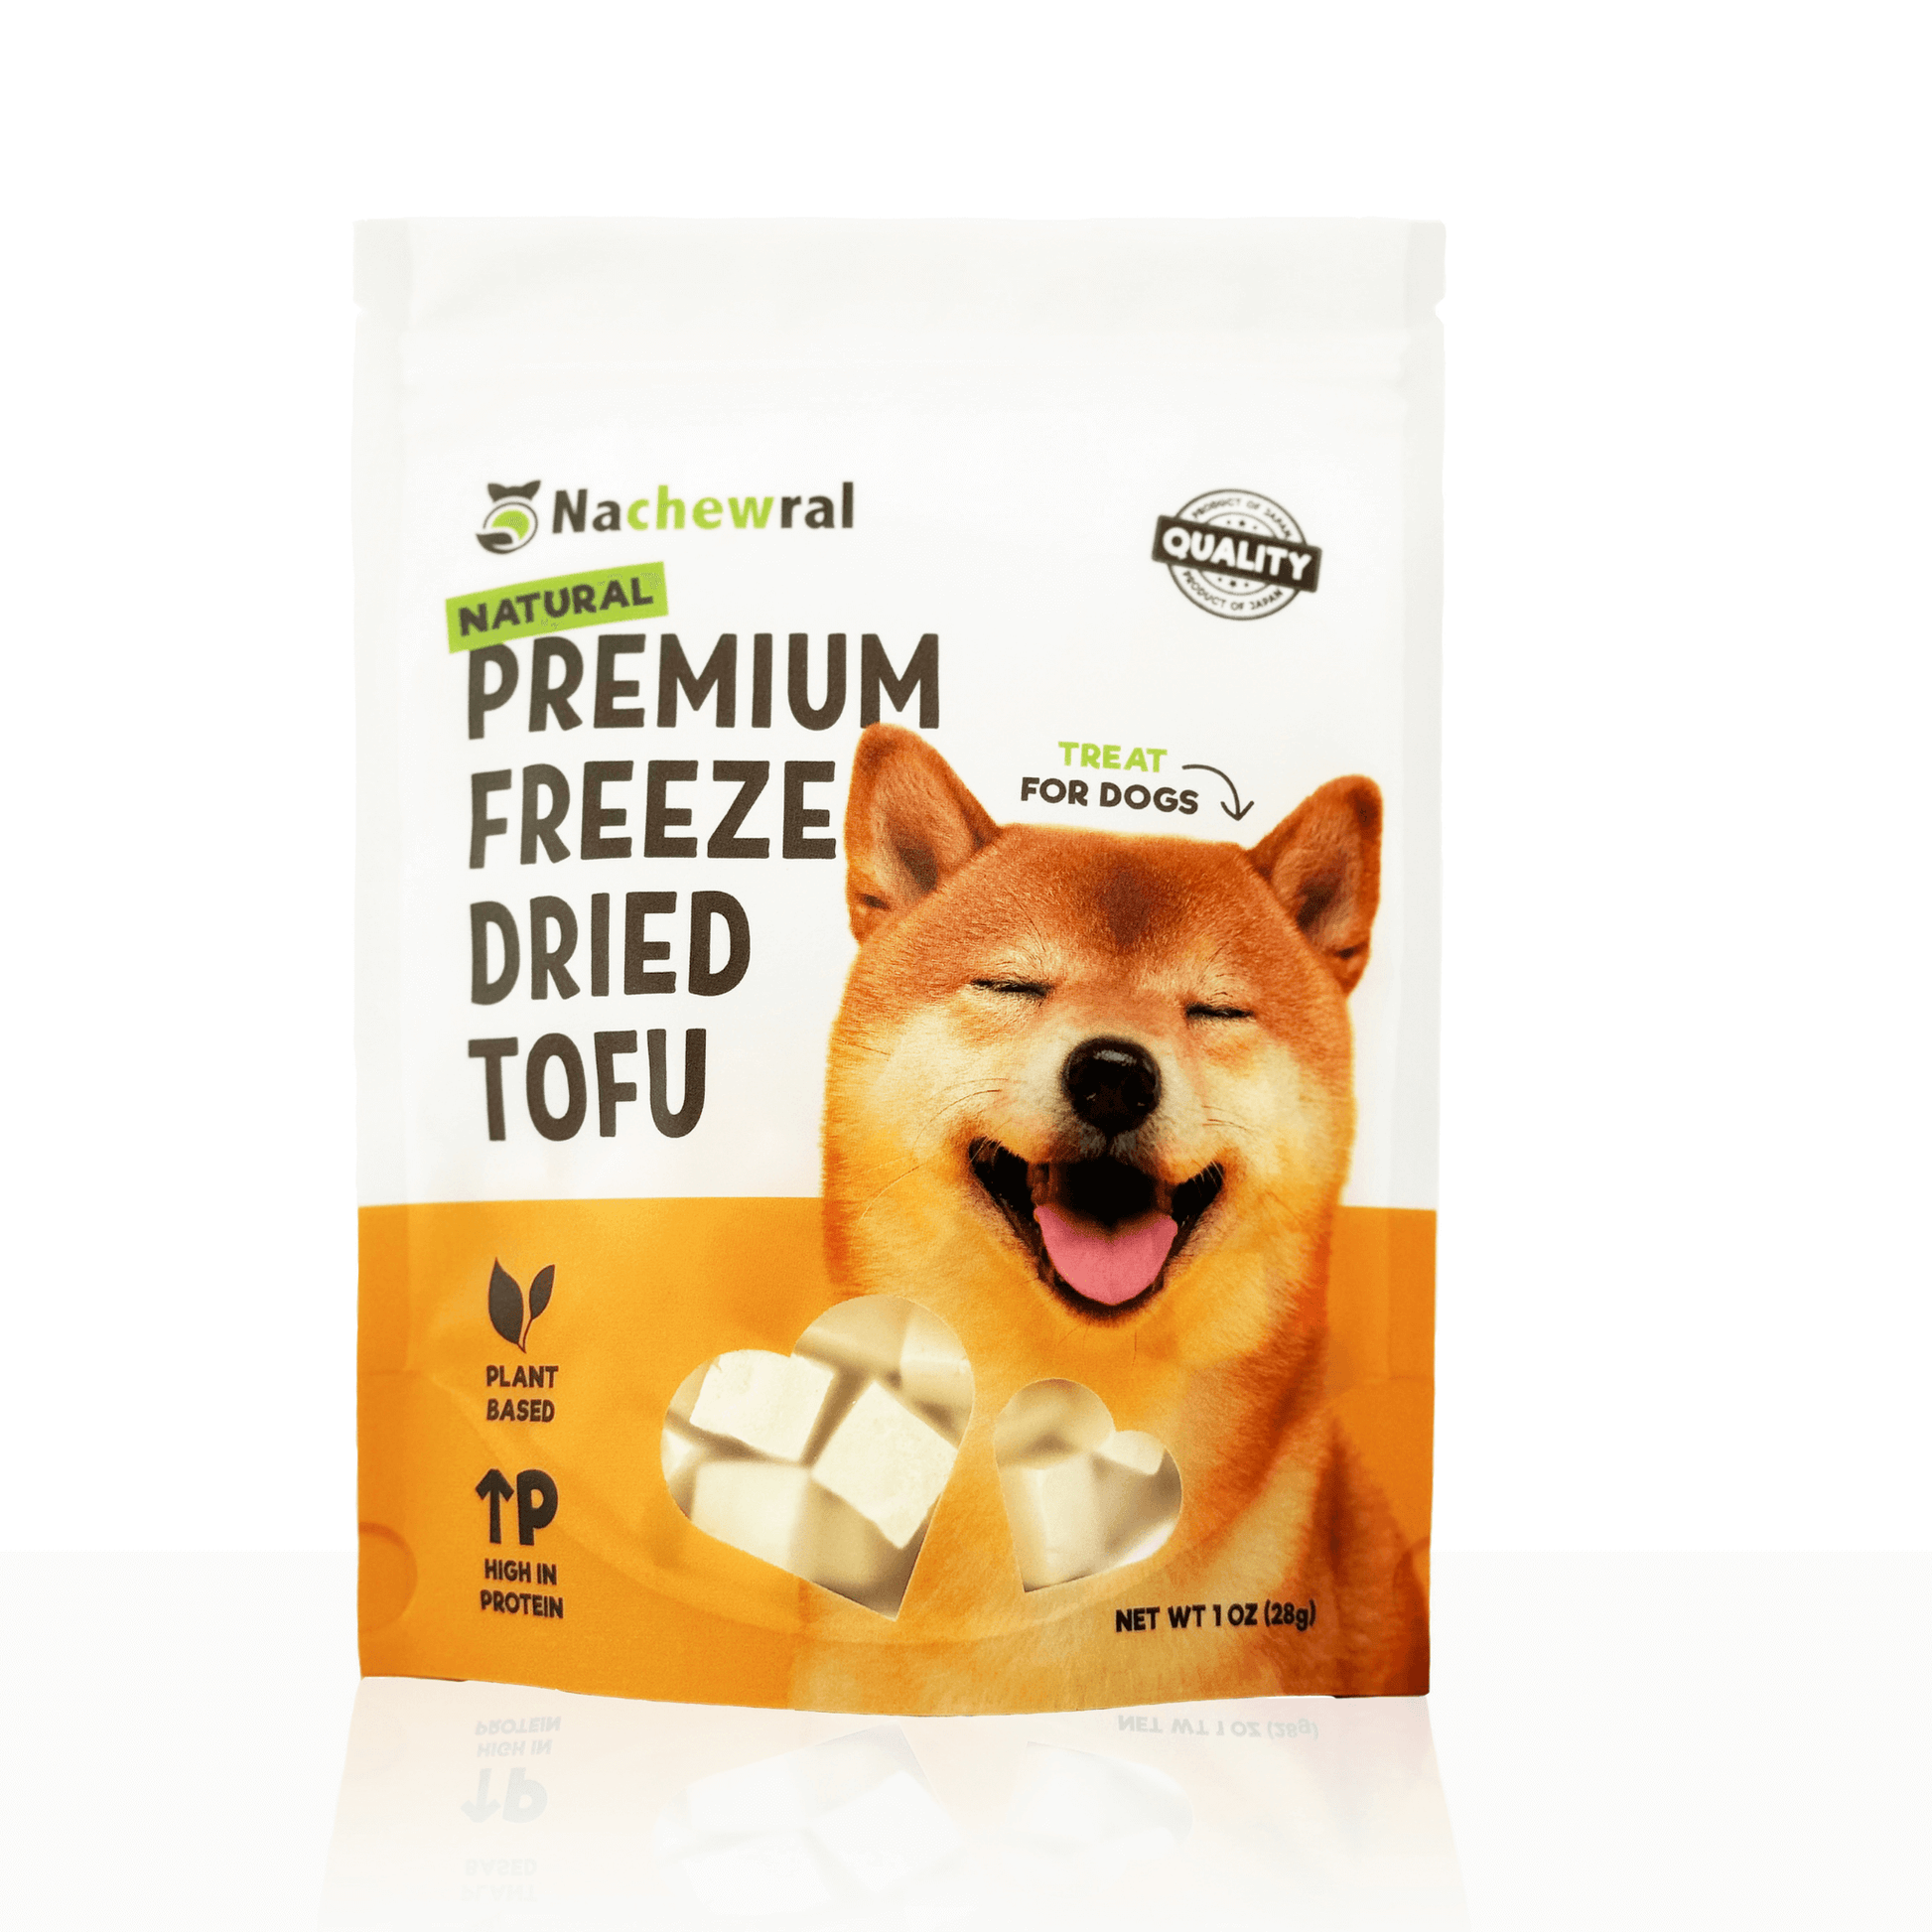 tofu for dog, plant-based dog treat, gluten-free, omega-6 ,no additives, low calories, vegan dog treat, freeze dried tofu